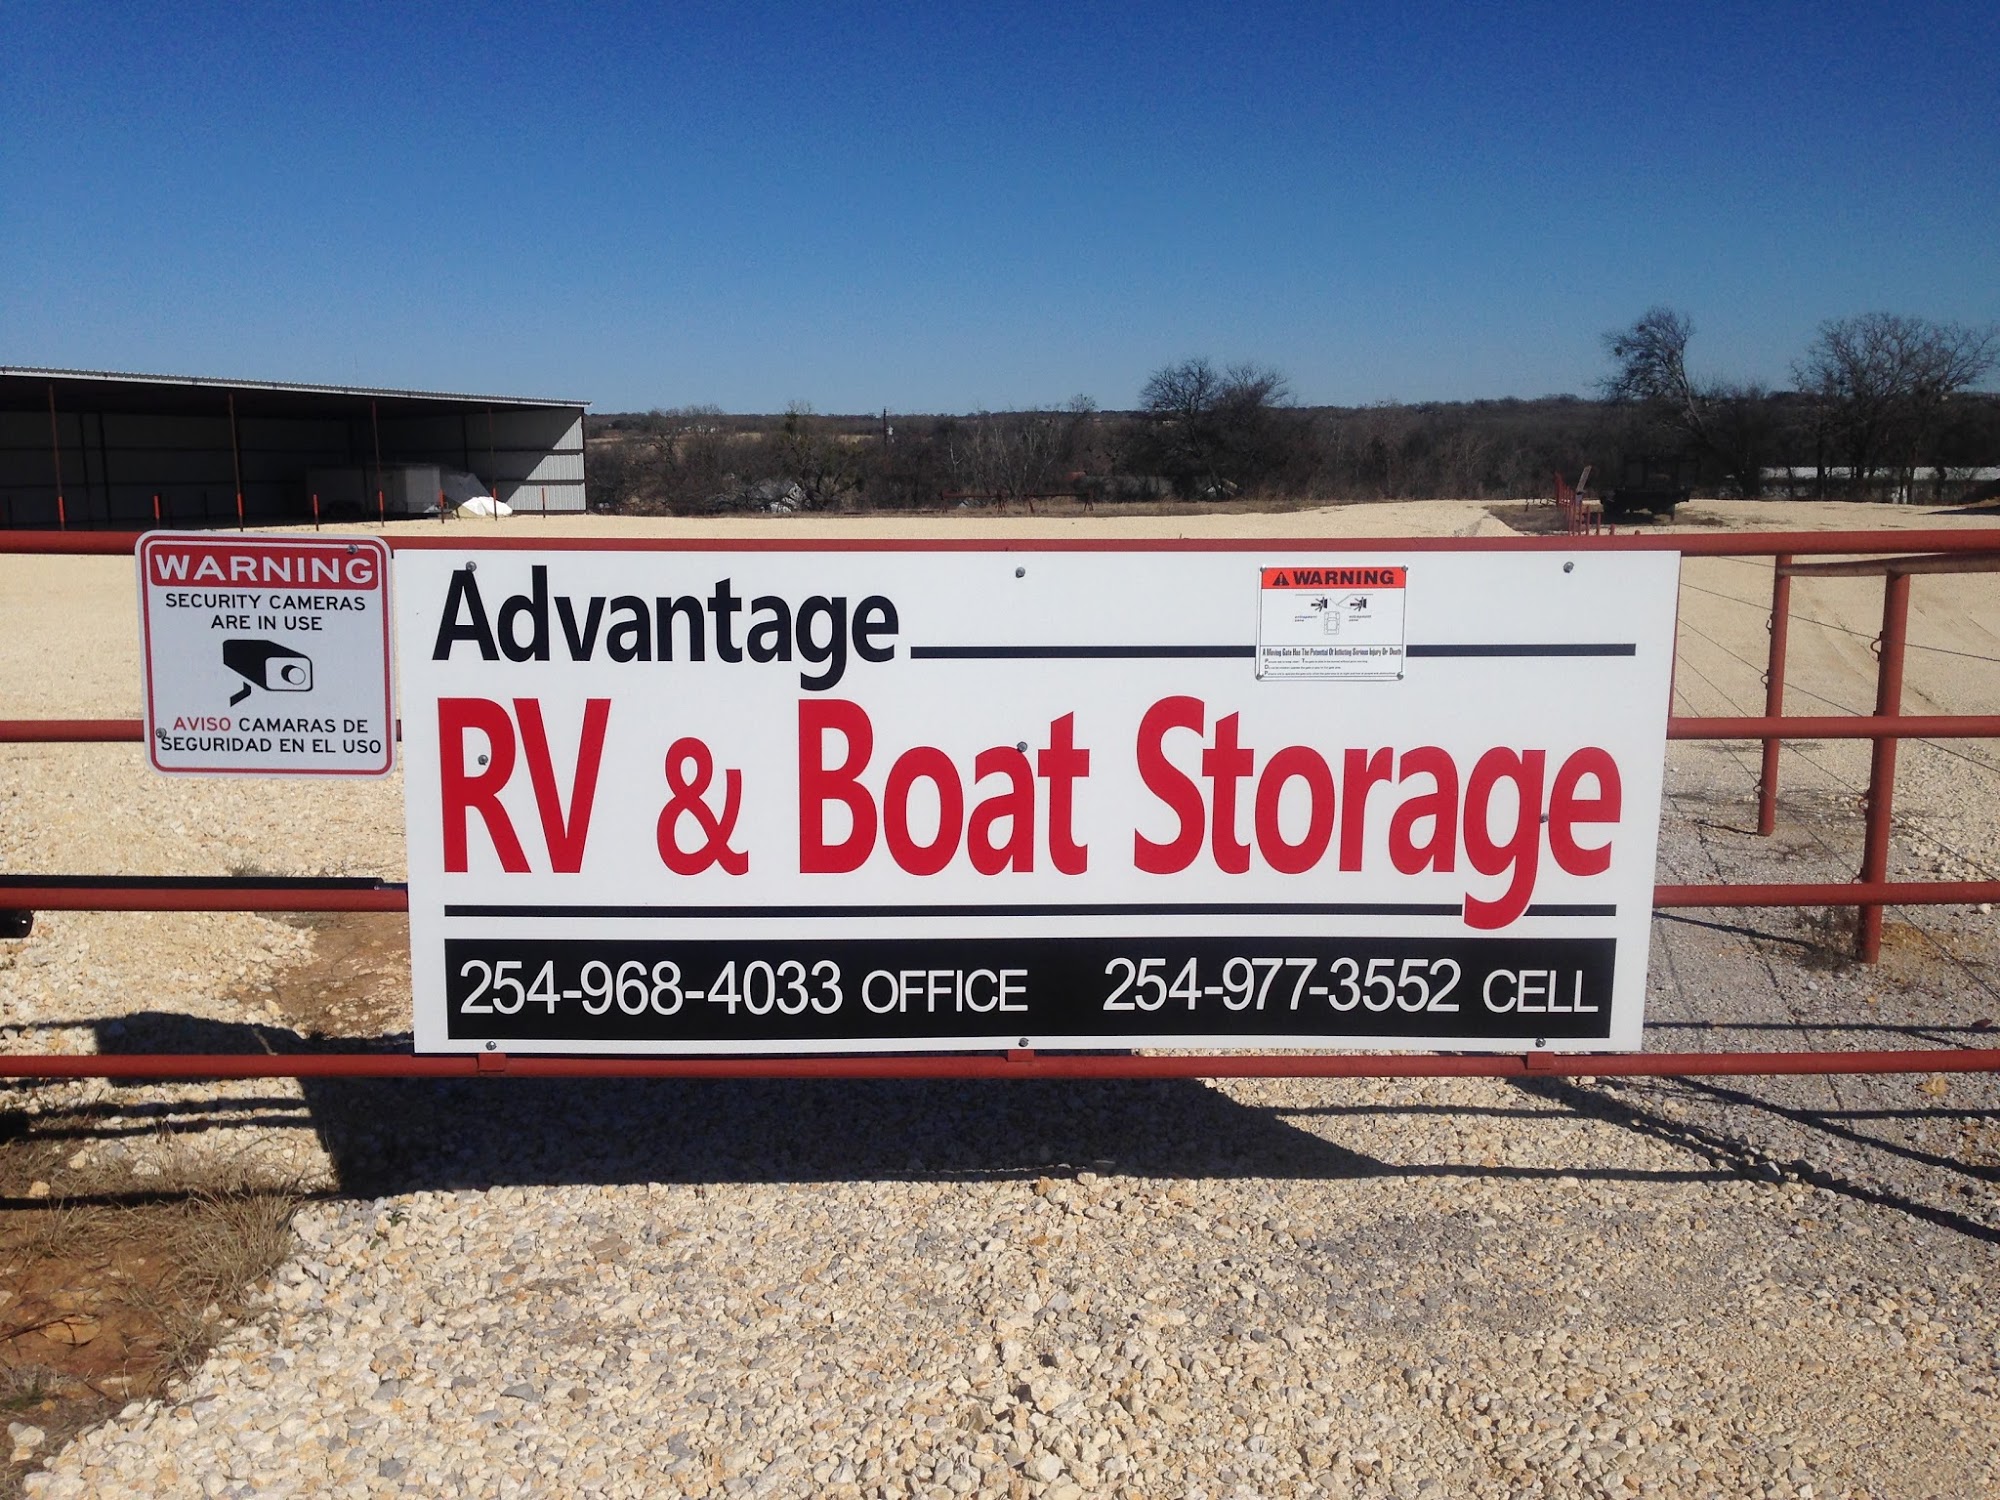 Advantage RV and Boat Storage